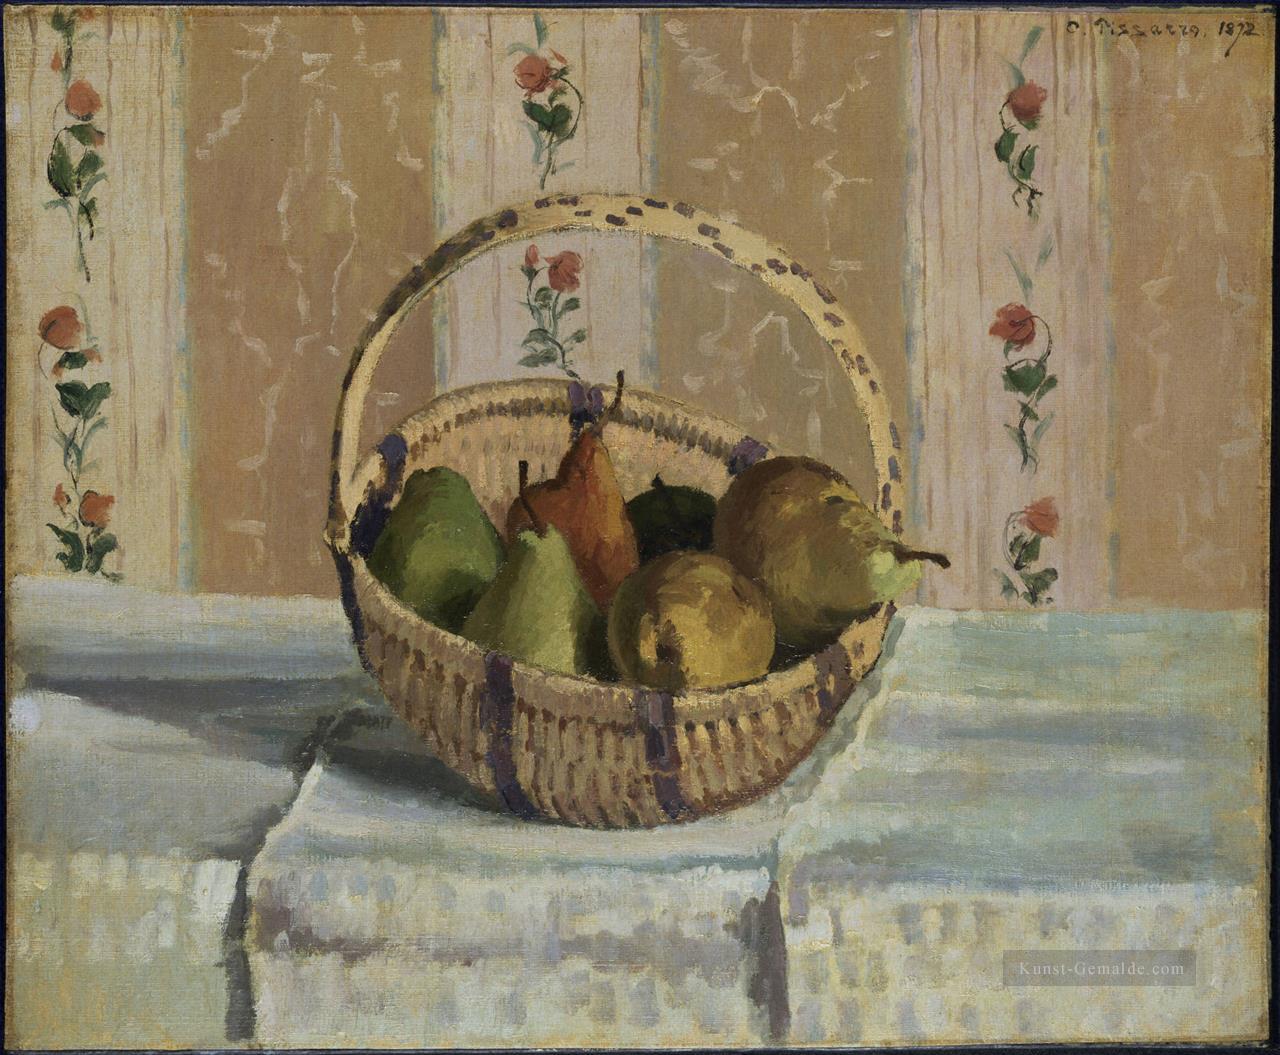 Äpfeln und Birnen in einem runden Korb 1872 Camille Pissarro Ölgemälde